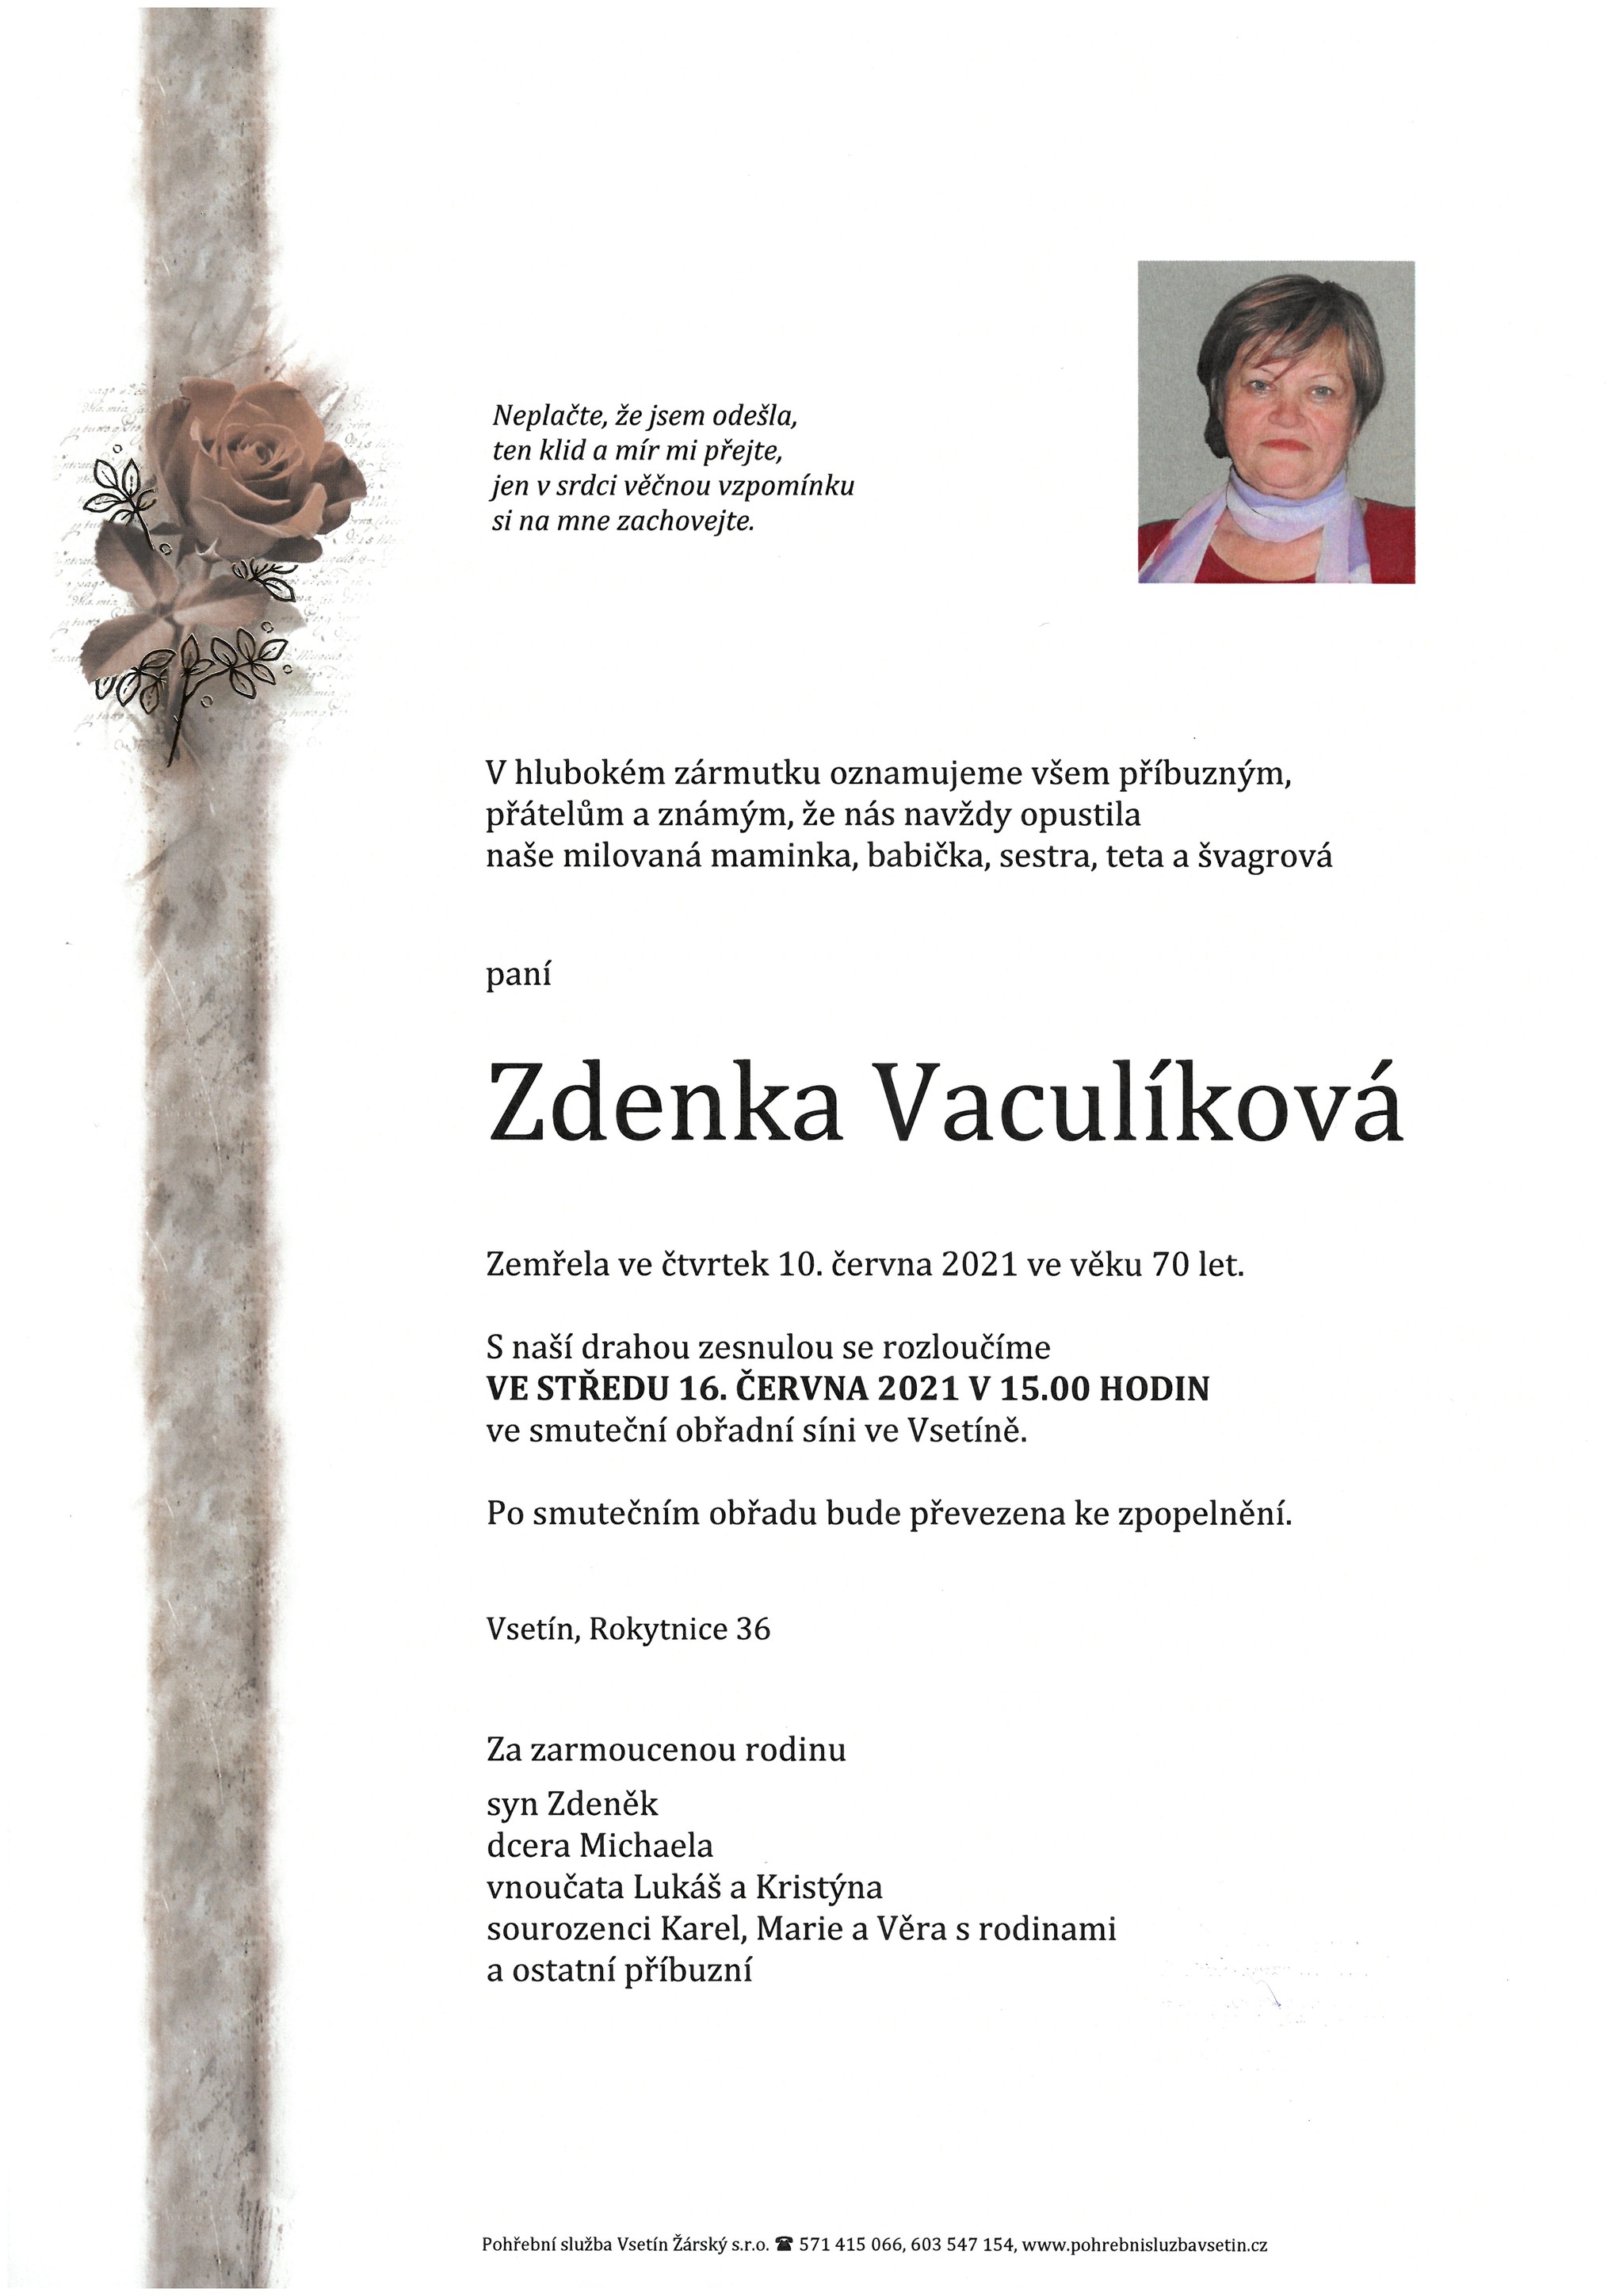 Zdenka Vaculíková